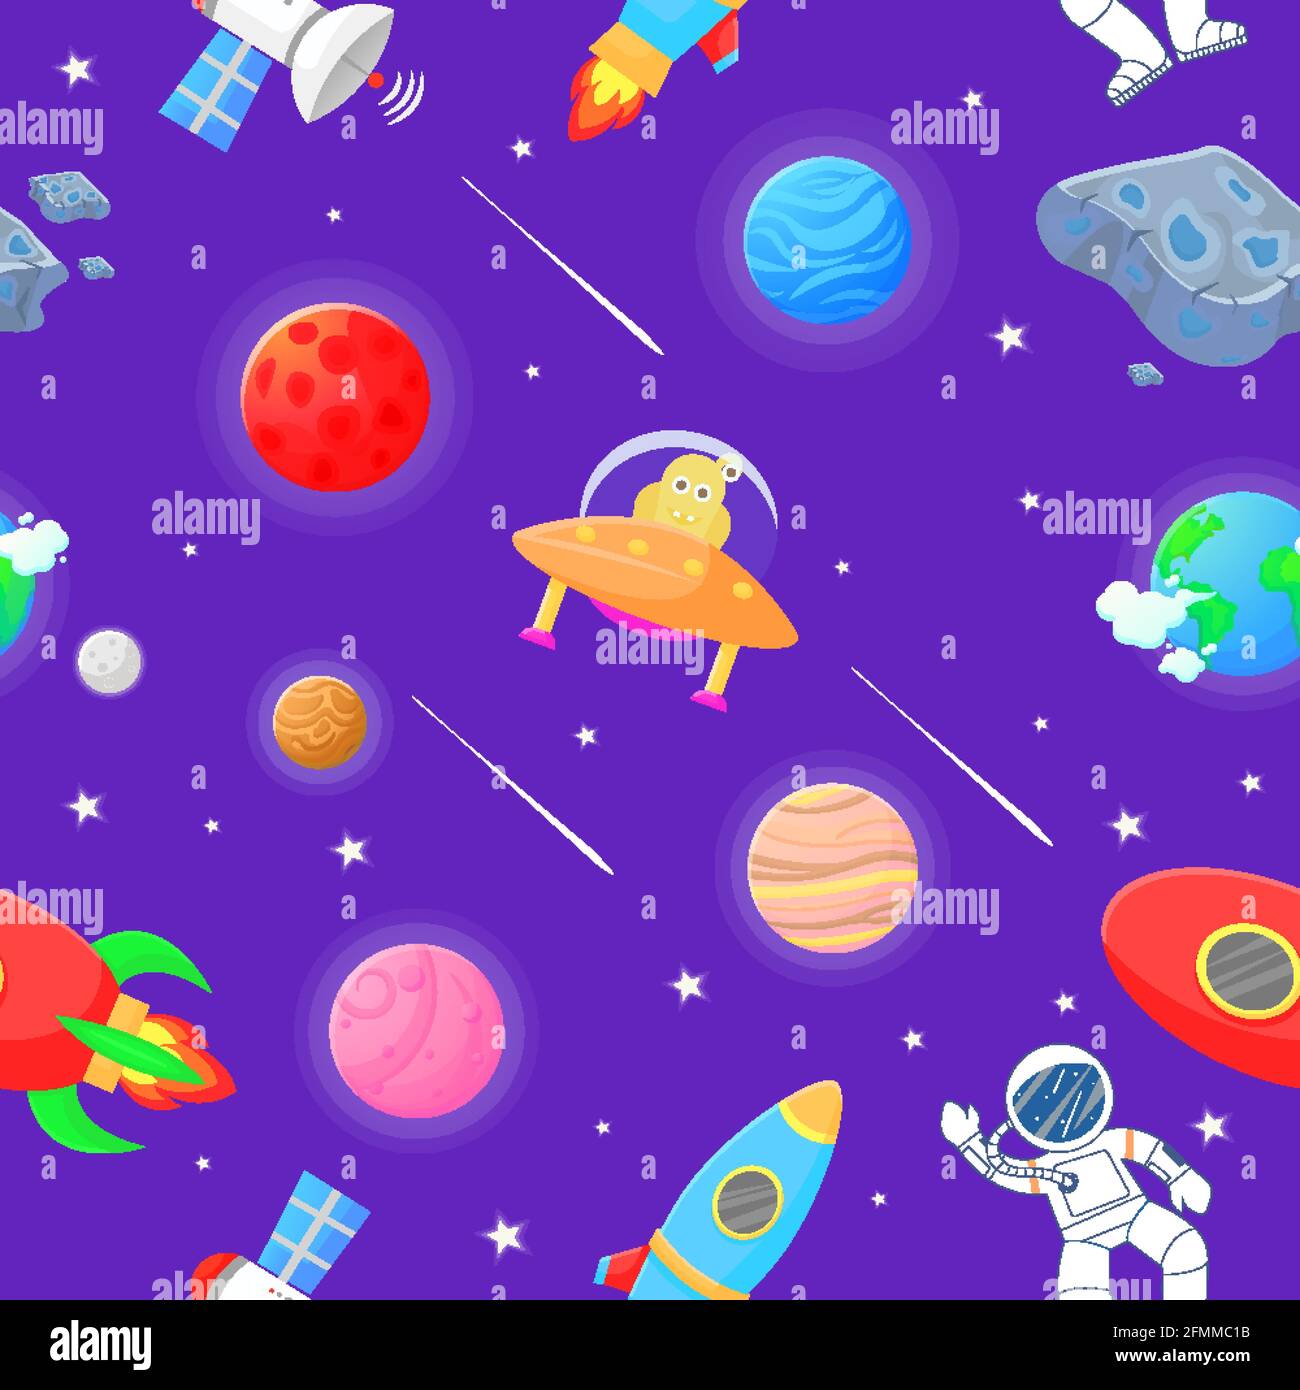 Astronaut mit Rakete und Alien im Freiraum Kosmisches Gewebe für Kinder.  Niedliches Design für Kinder aus Stoff und Geschenkpapier. Flache  Cartoon-Stil lustig cos Stock-Vektorgrafik - Alamy